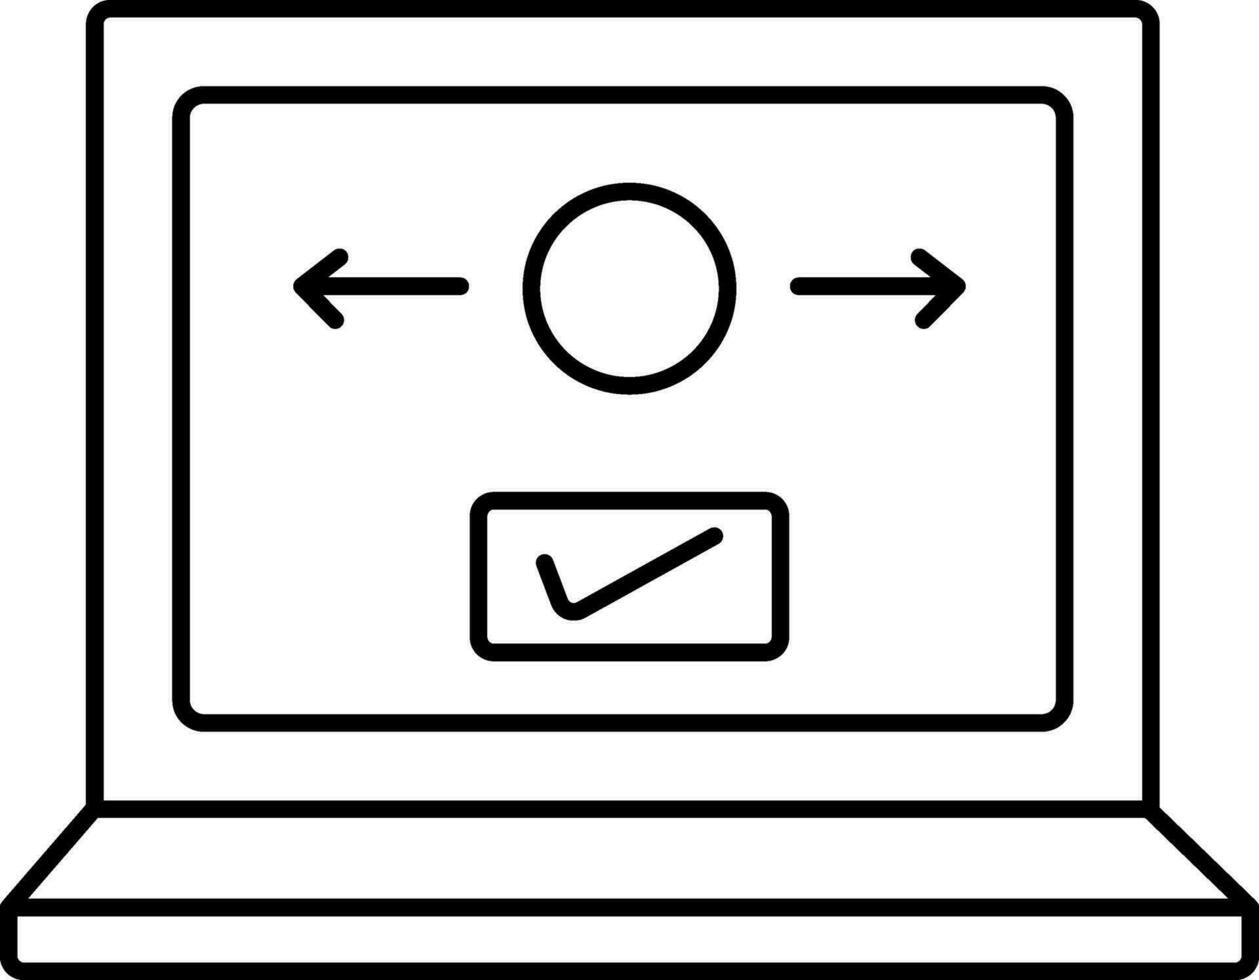 lineal estilo verificado dinero transacción en ordenador portátil icono. vector